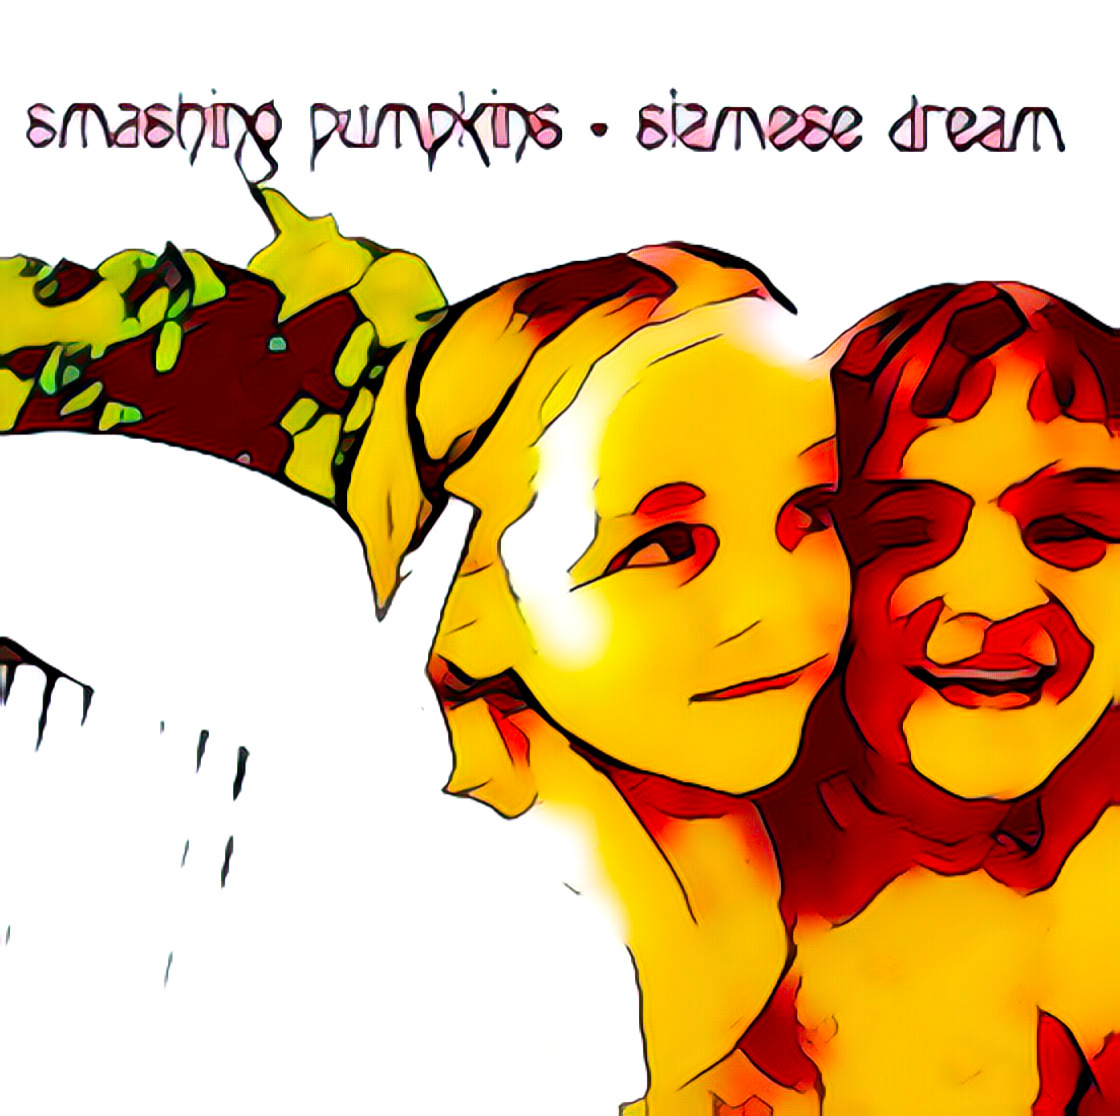 Siamese Dream by Smashing Pumpkins - by Craig Lyndall